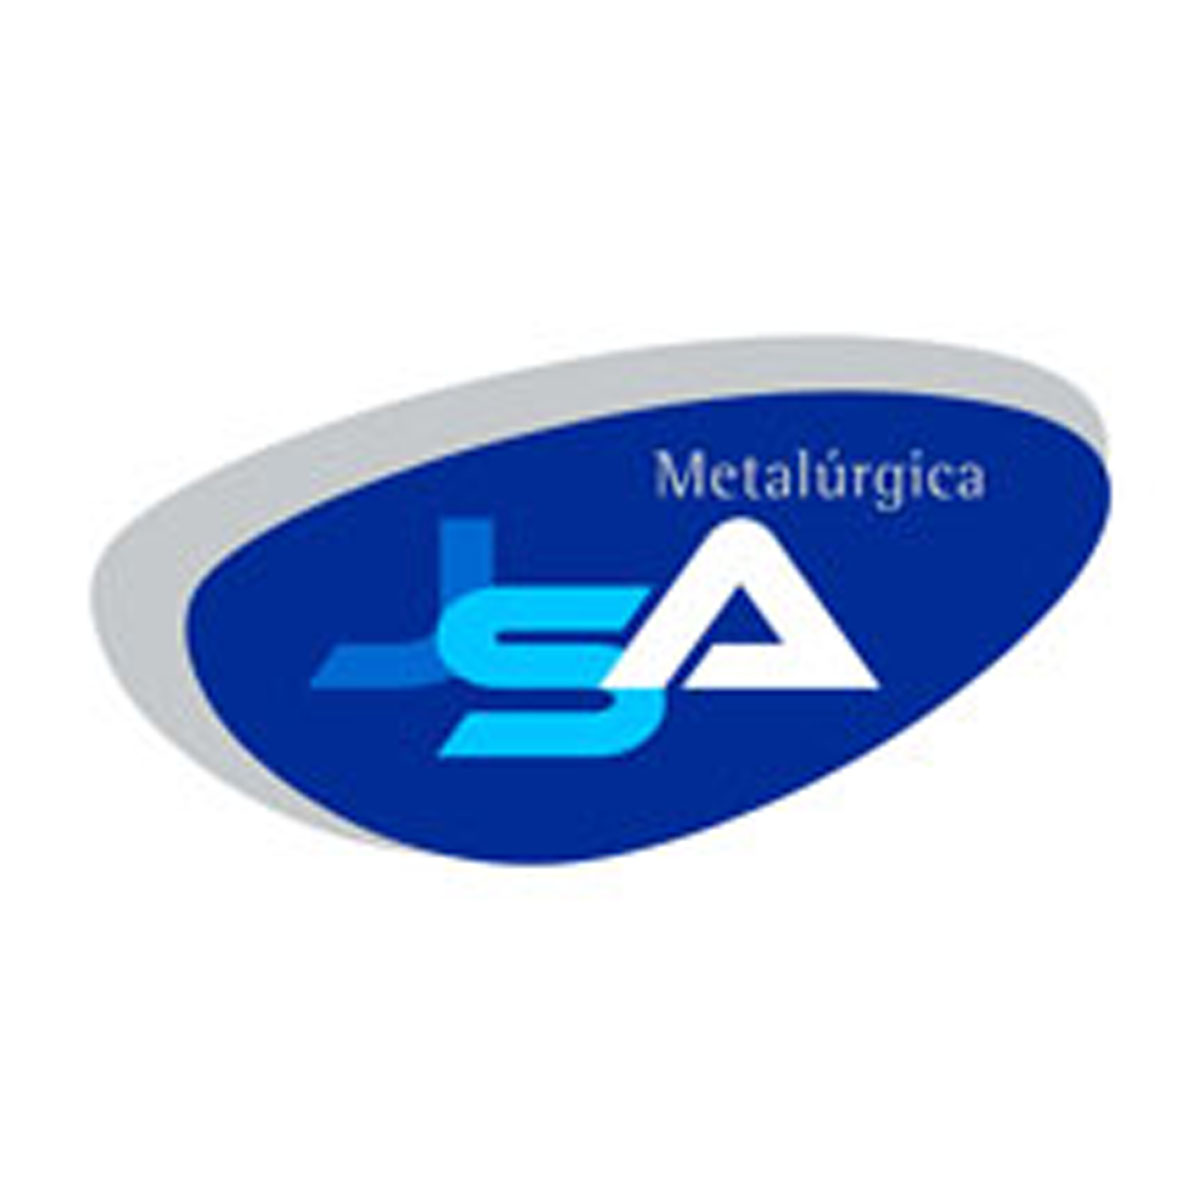 Metalúrgica JSA Ltda